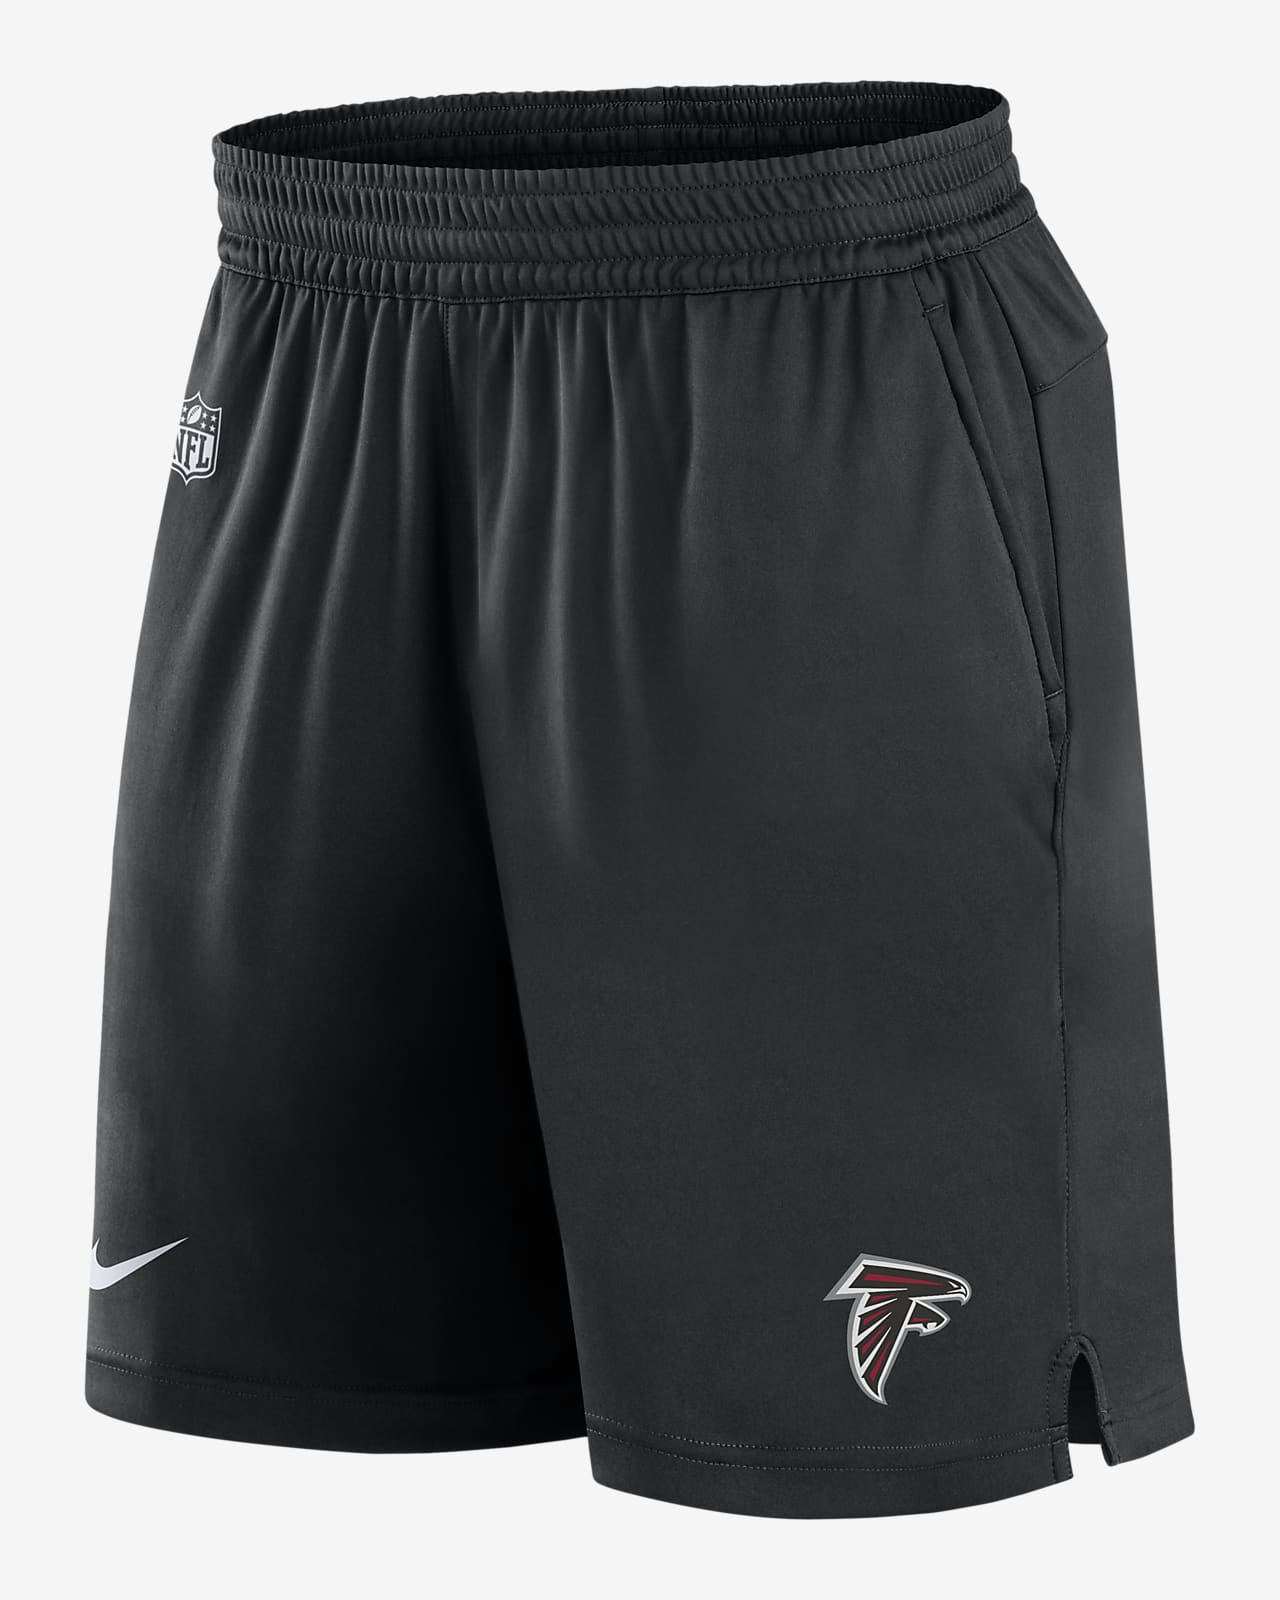 Nike Dri-FIT Sideline (NFL Atlanta Falcons) Men's Shorts.